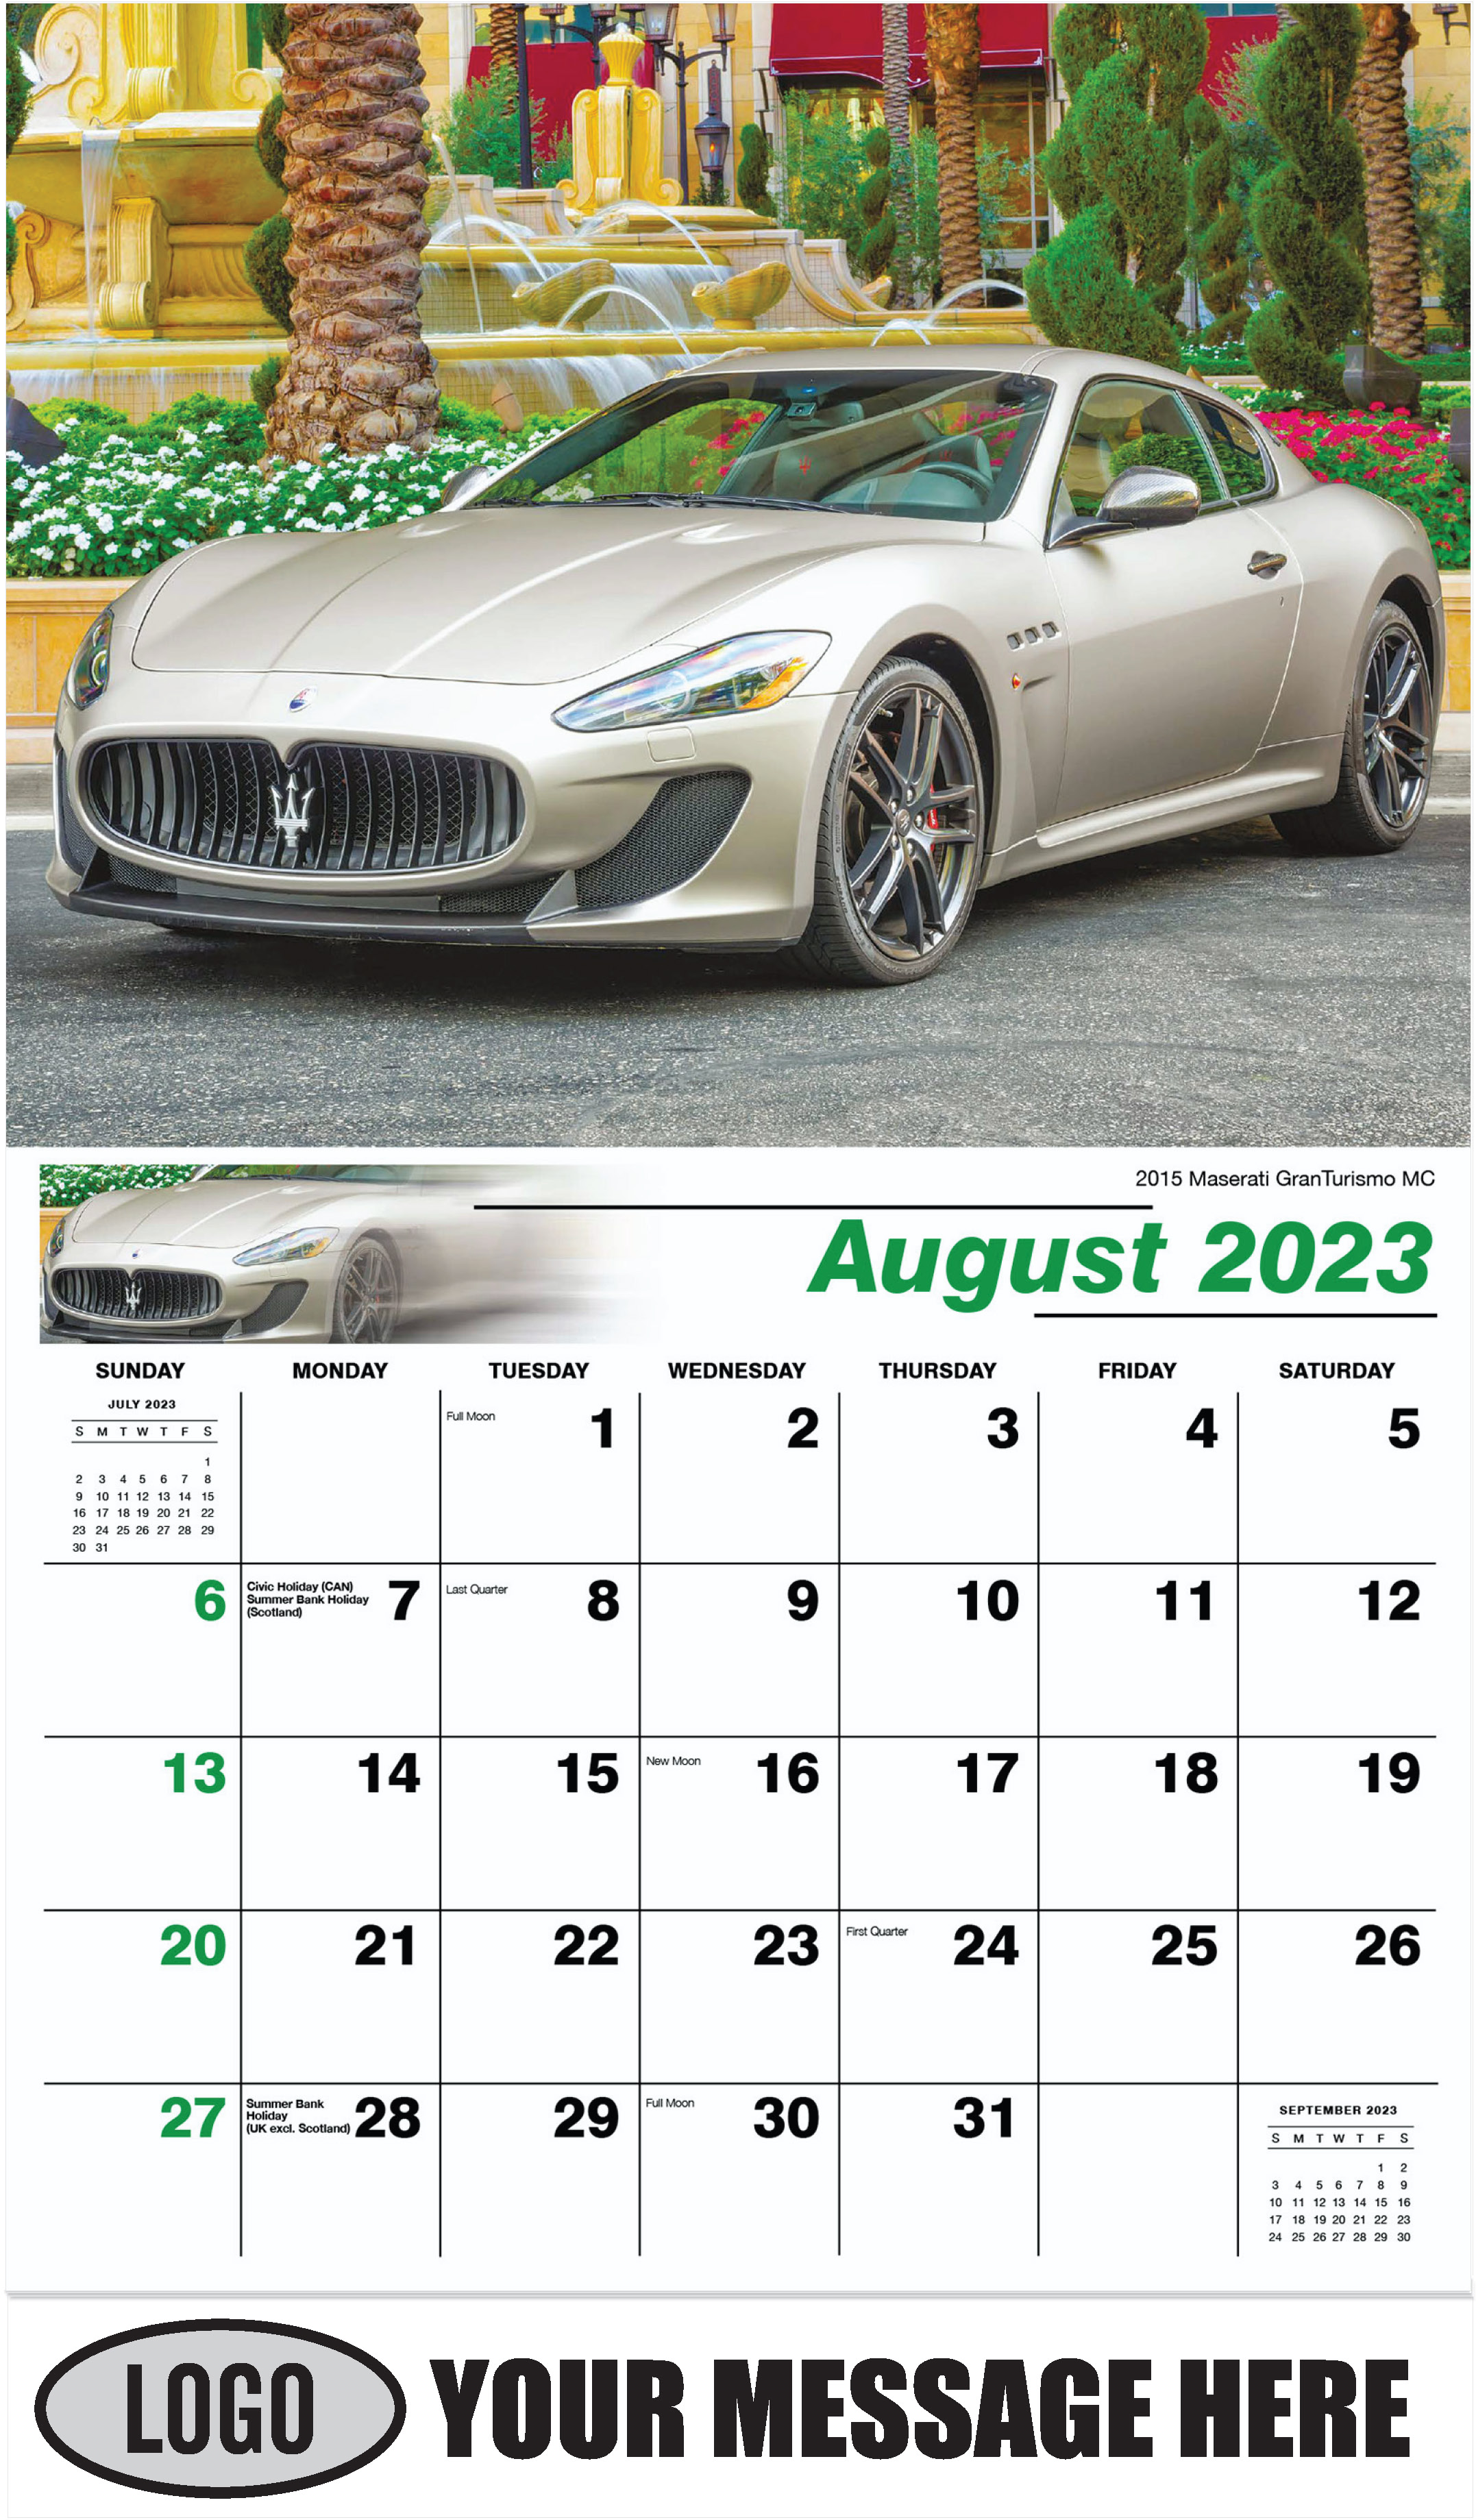 2015 Maserati GranTurismo MC - August - Exotic Cars 2023 Promotional Calendar